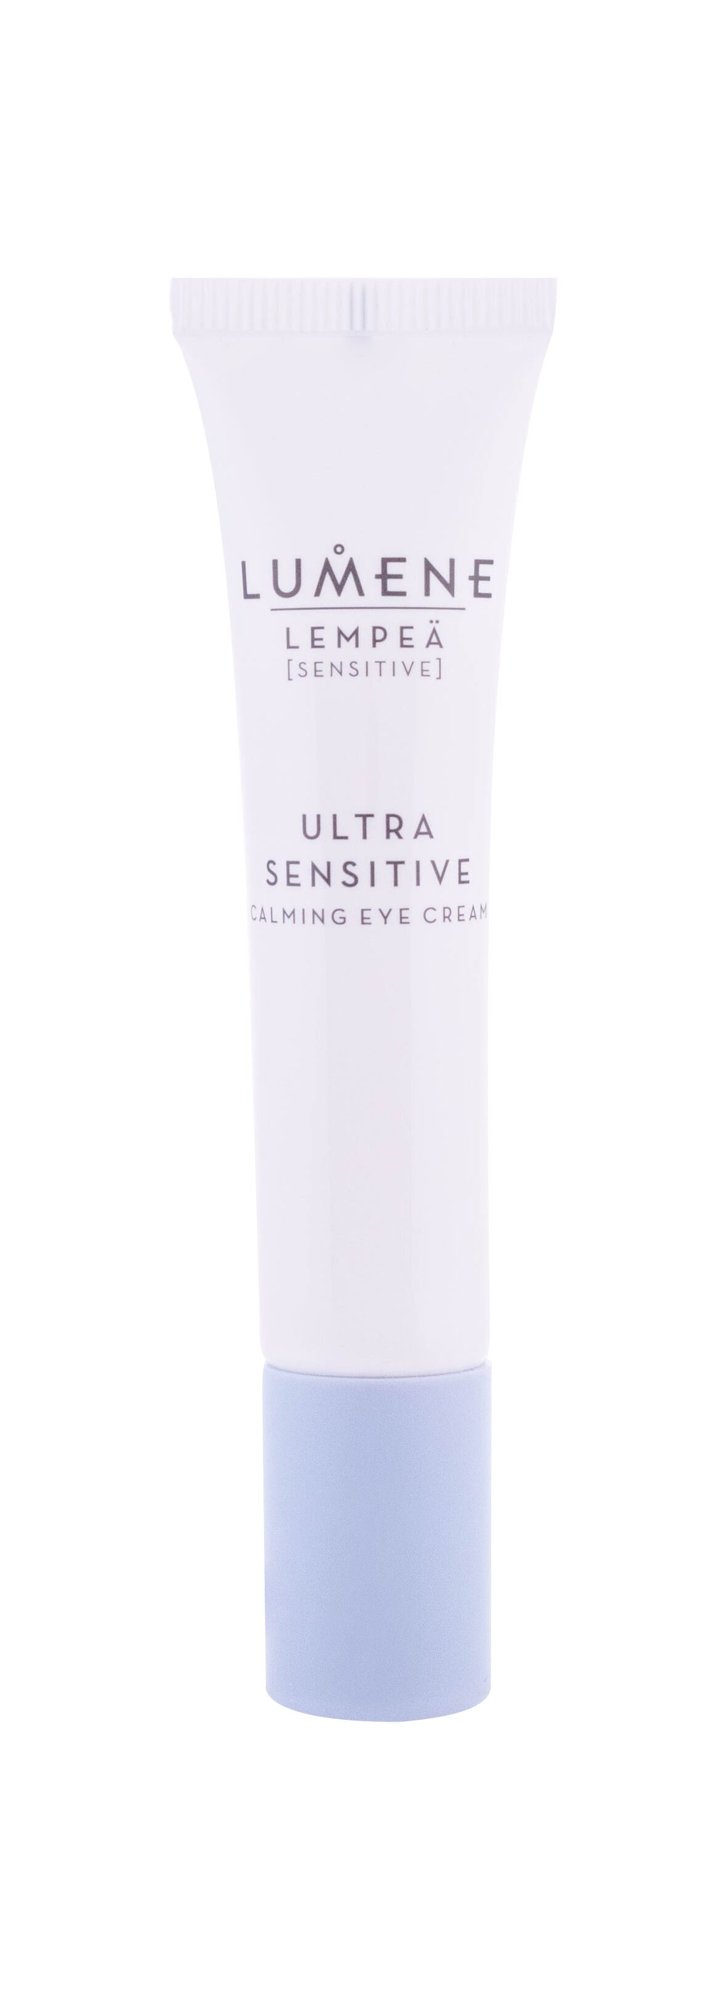 Lumene Lempeä Ultra Sensitive 15ml paakių kremas (Pažeista pakuotė)